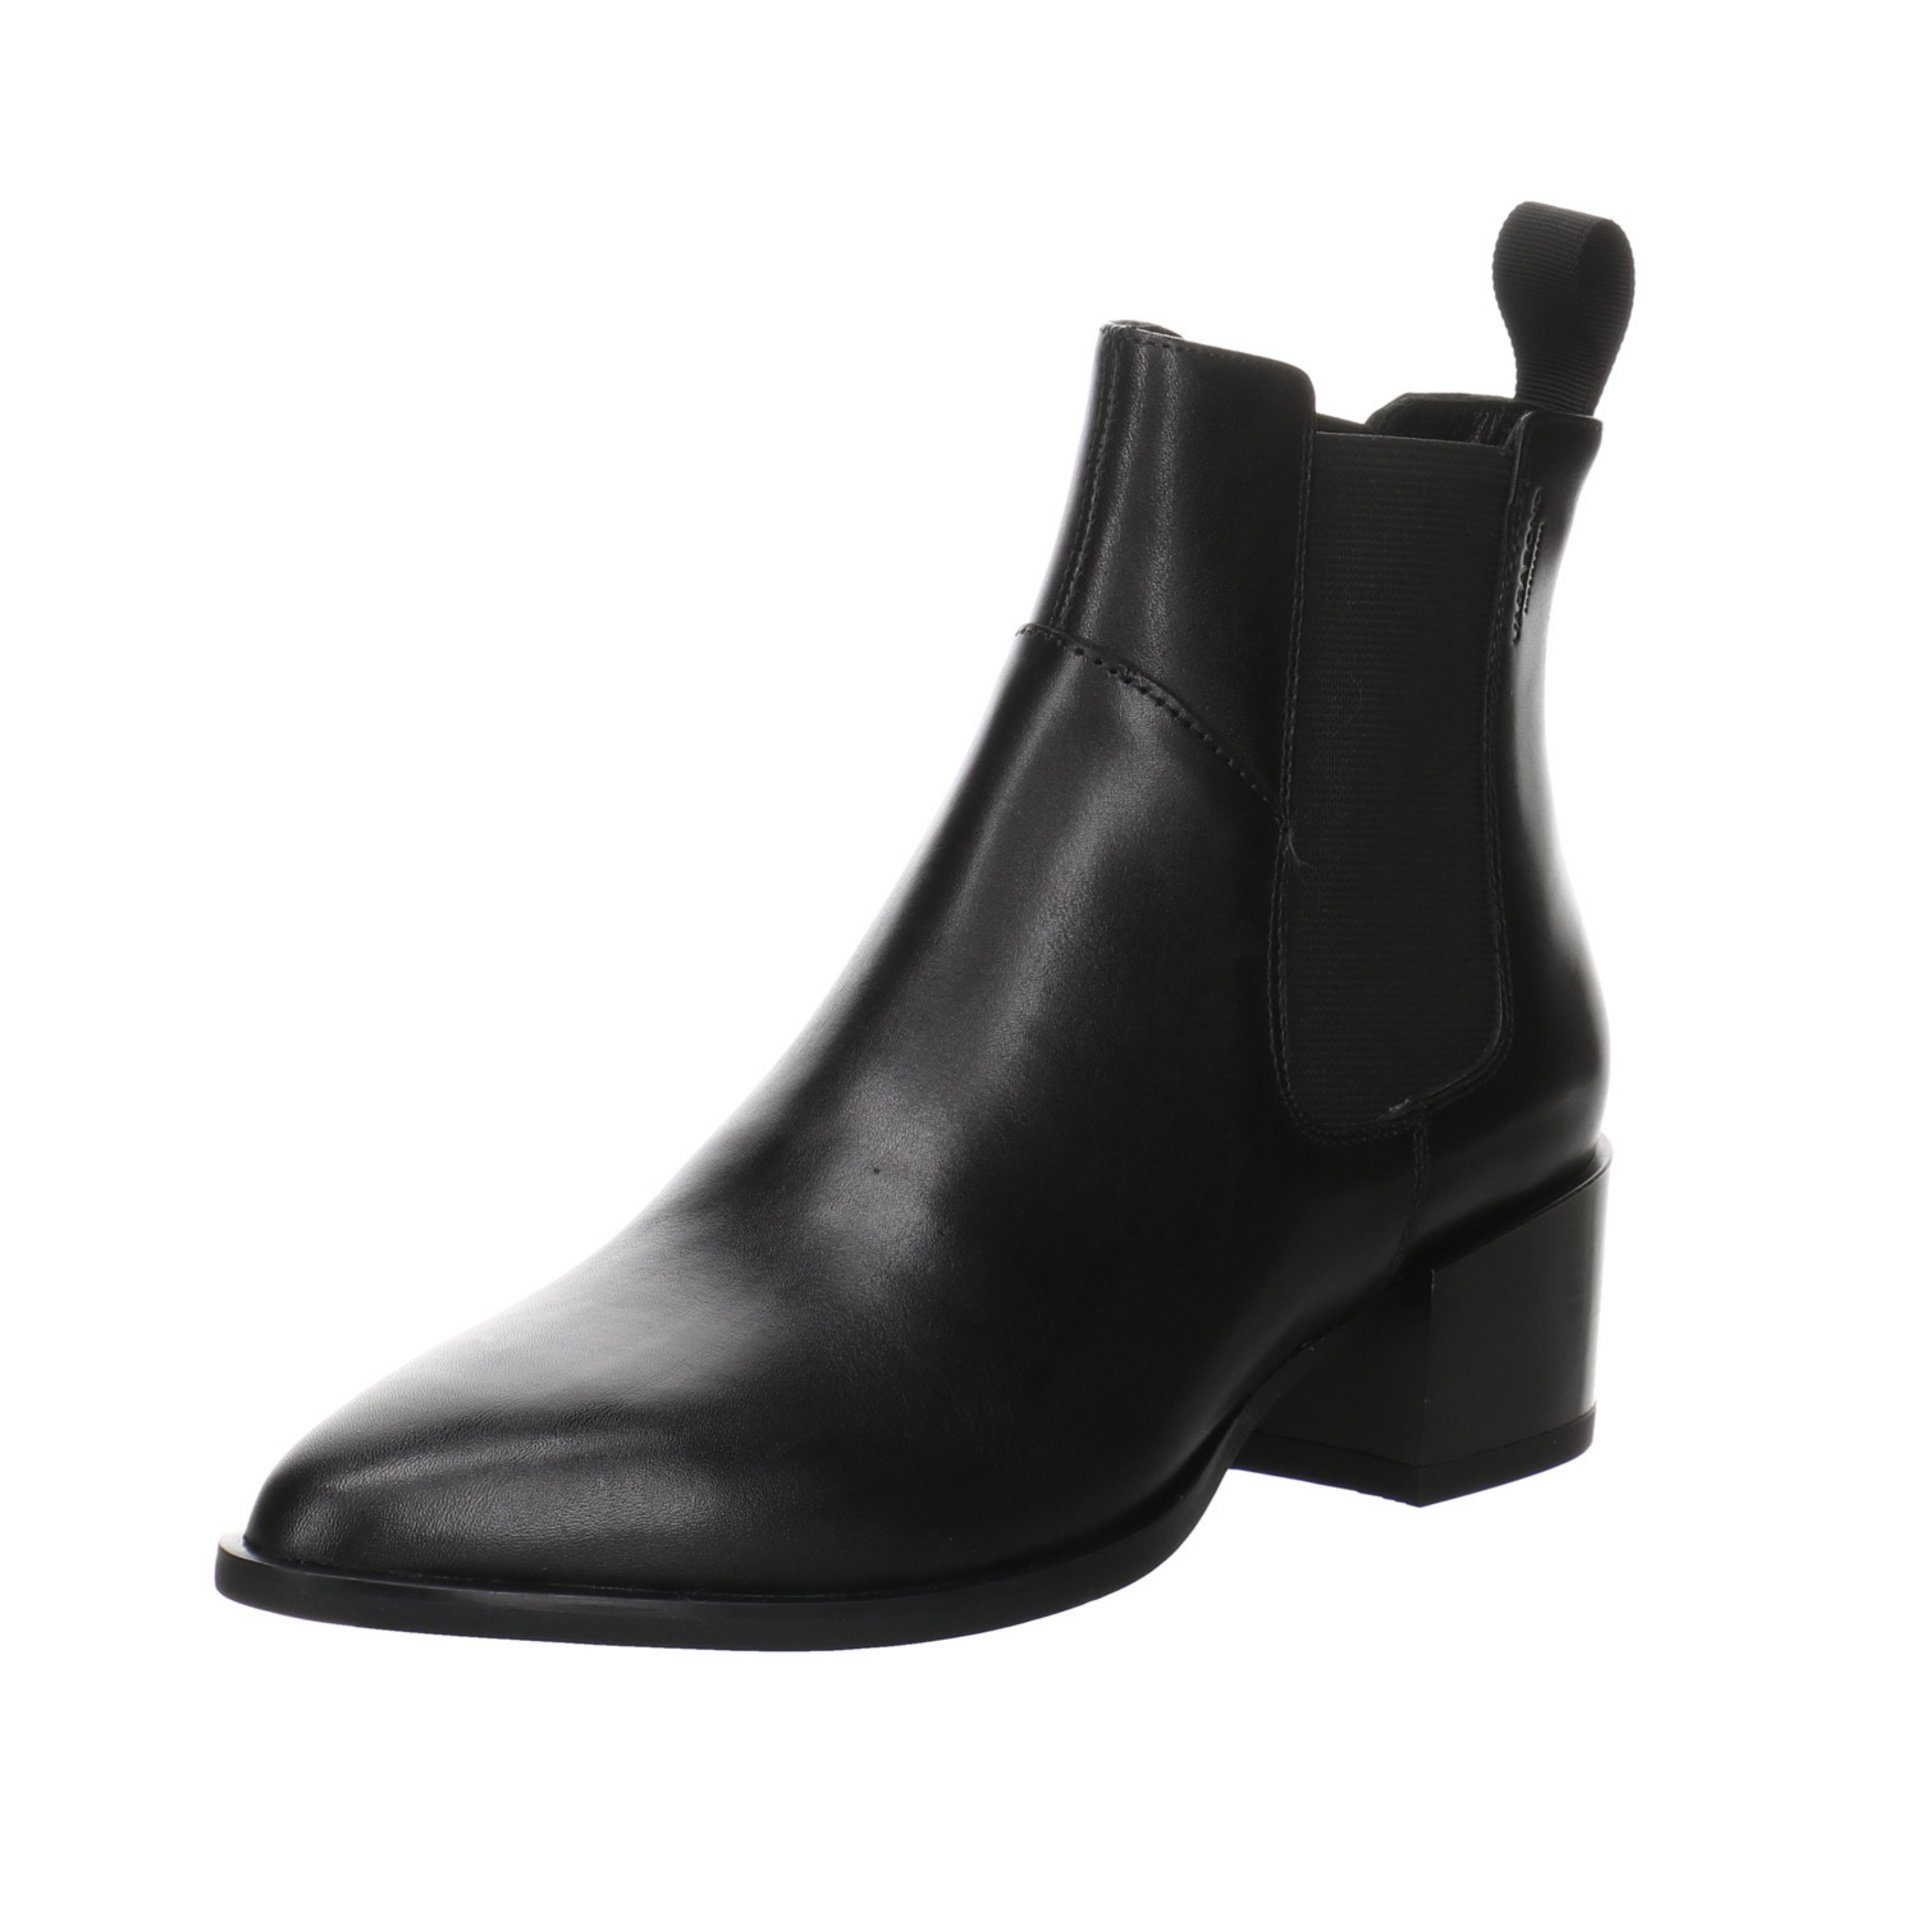 Vagabond Damen Stiefeletten Schuhe Marja Chelsea Boots Stiefelette  Leder-/Textilkombination